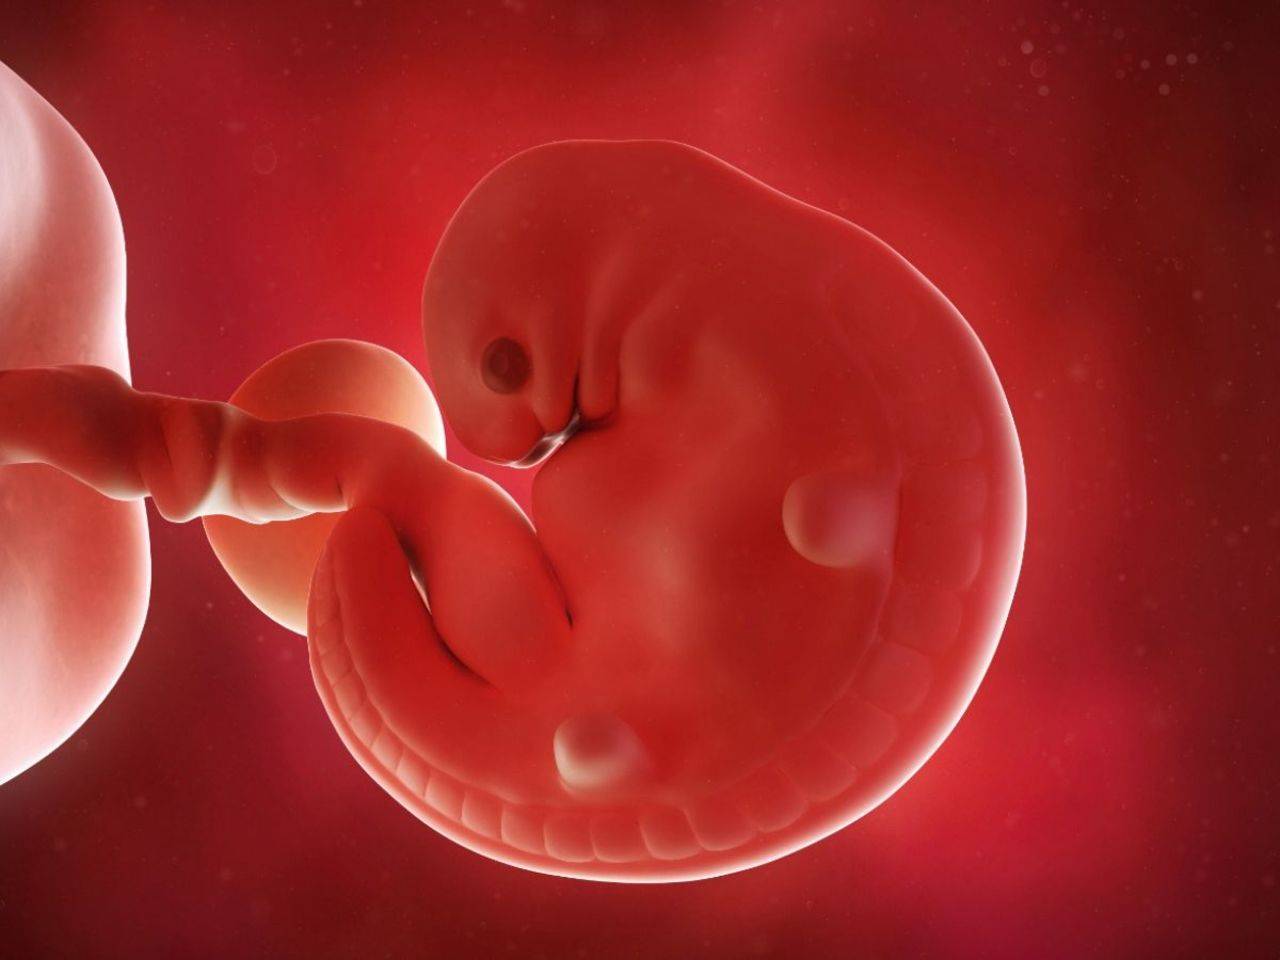 Плод 5 6 недель. Человеческий зародыш 6 недель. Эмбрион на 6 неделе беременности. Эмбрион человека 5-6 недель.